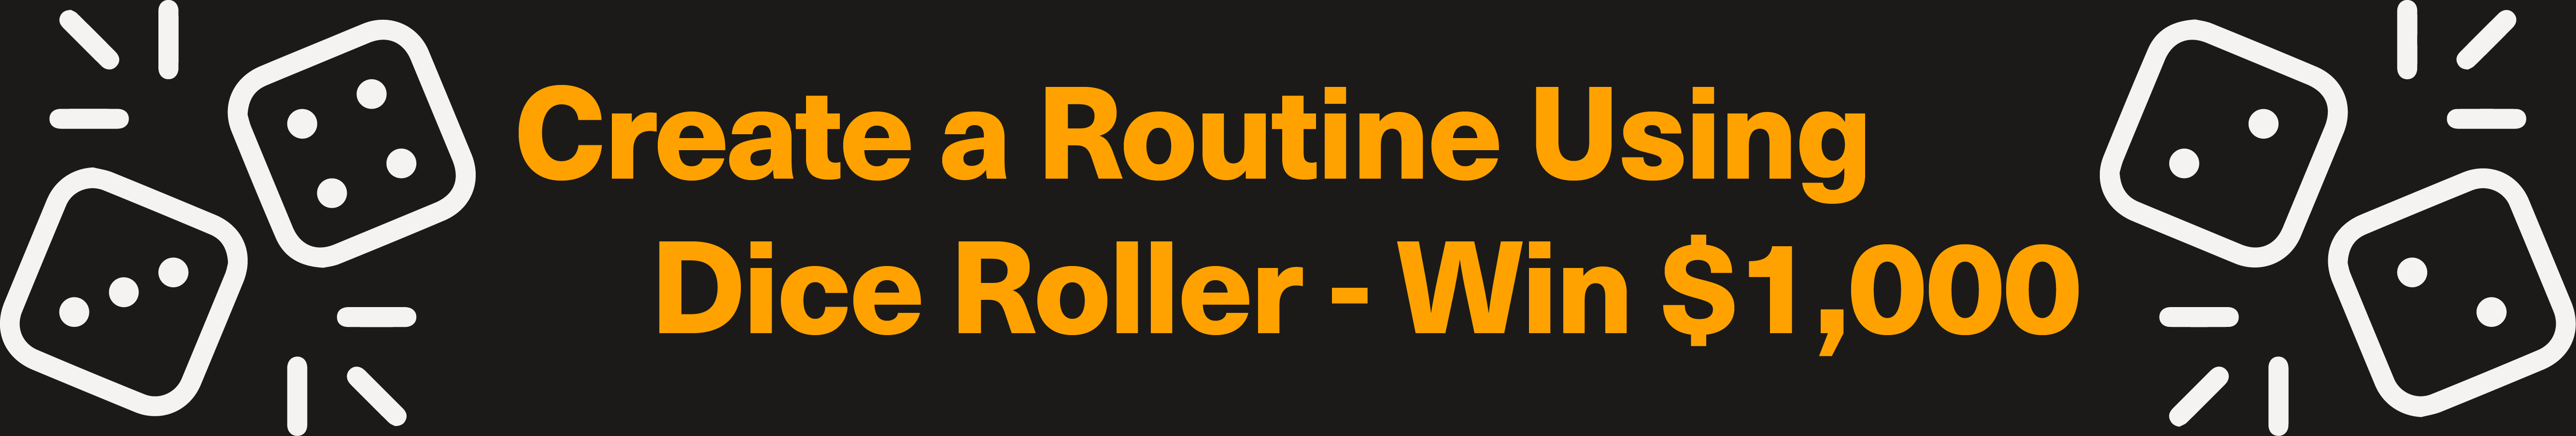 Dice Roller Title 1 | Ellusionist online magic store